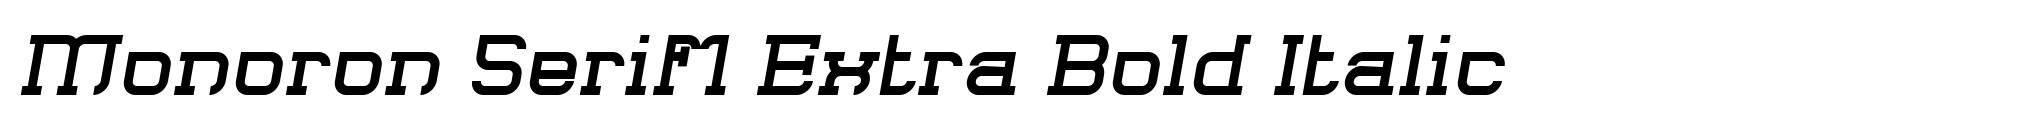 Monoron Serif1 Extra Bold Italic image